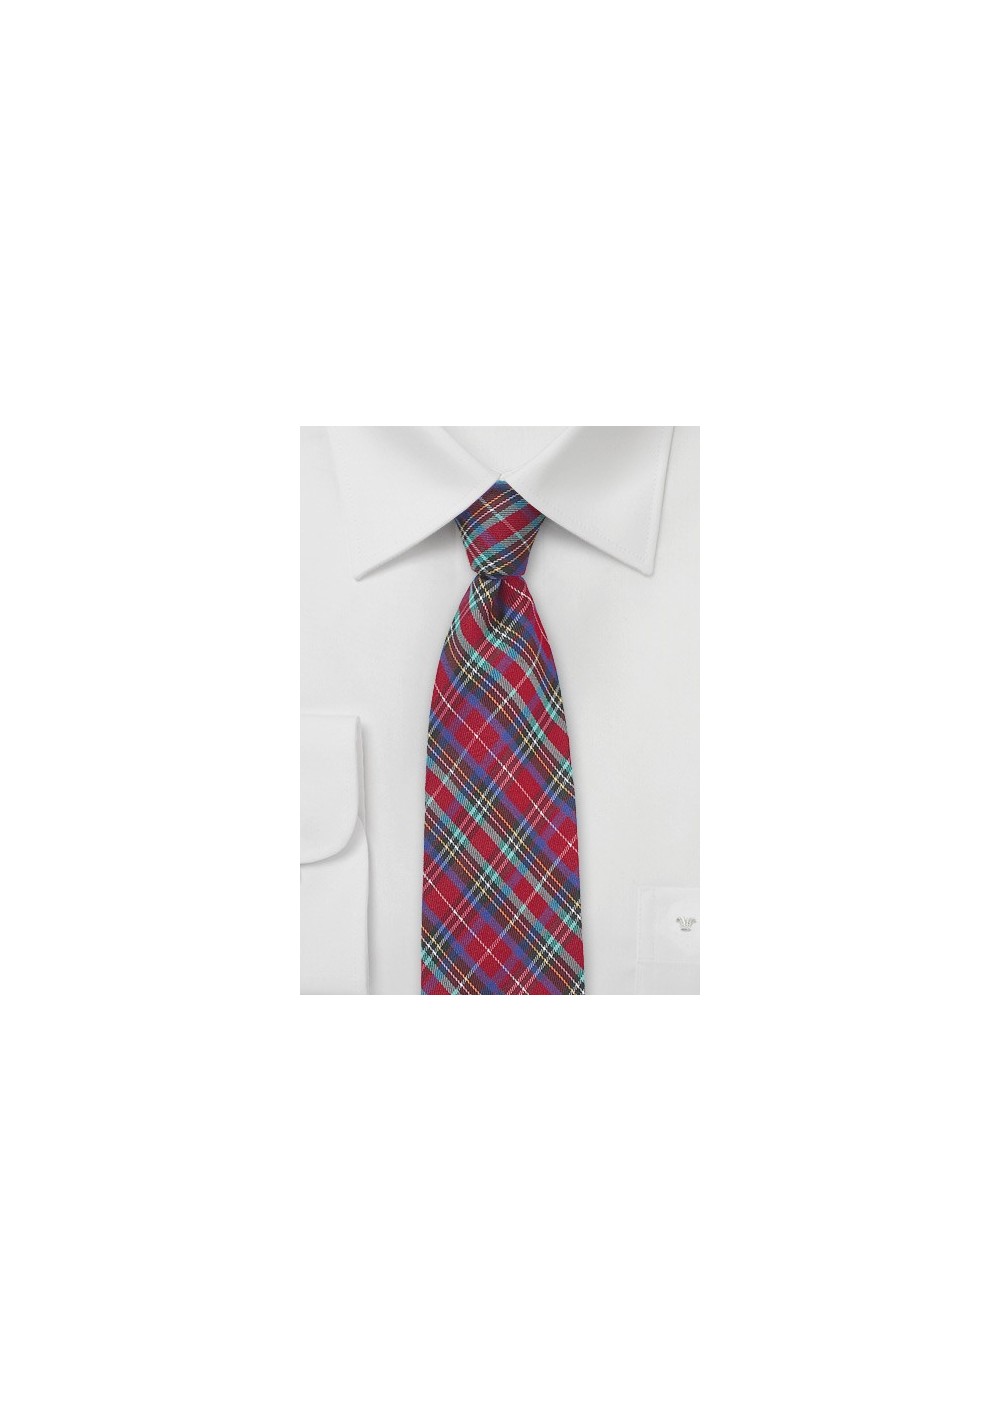 Colorful Summer Plaid Cotton Necktie